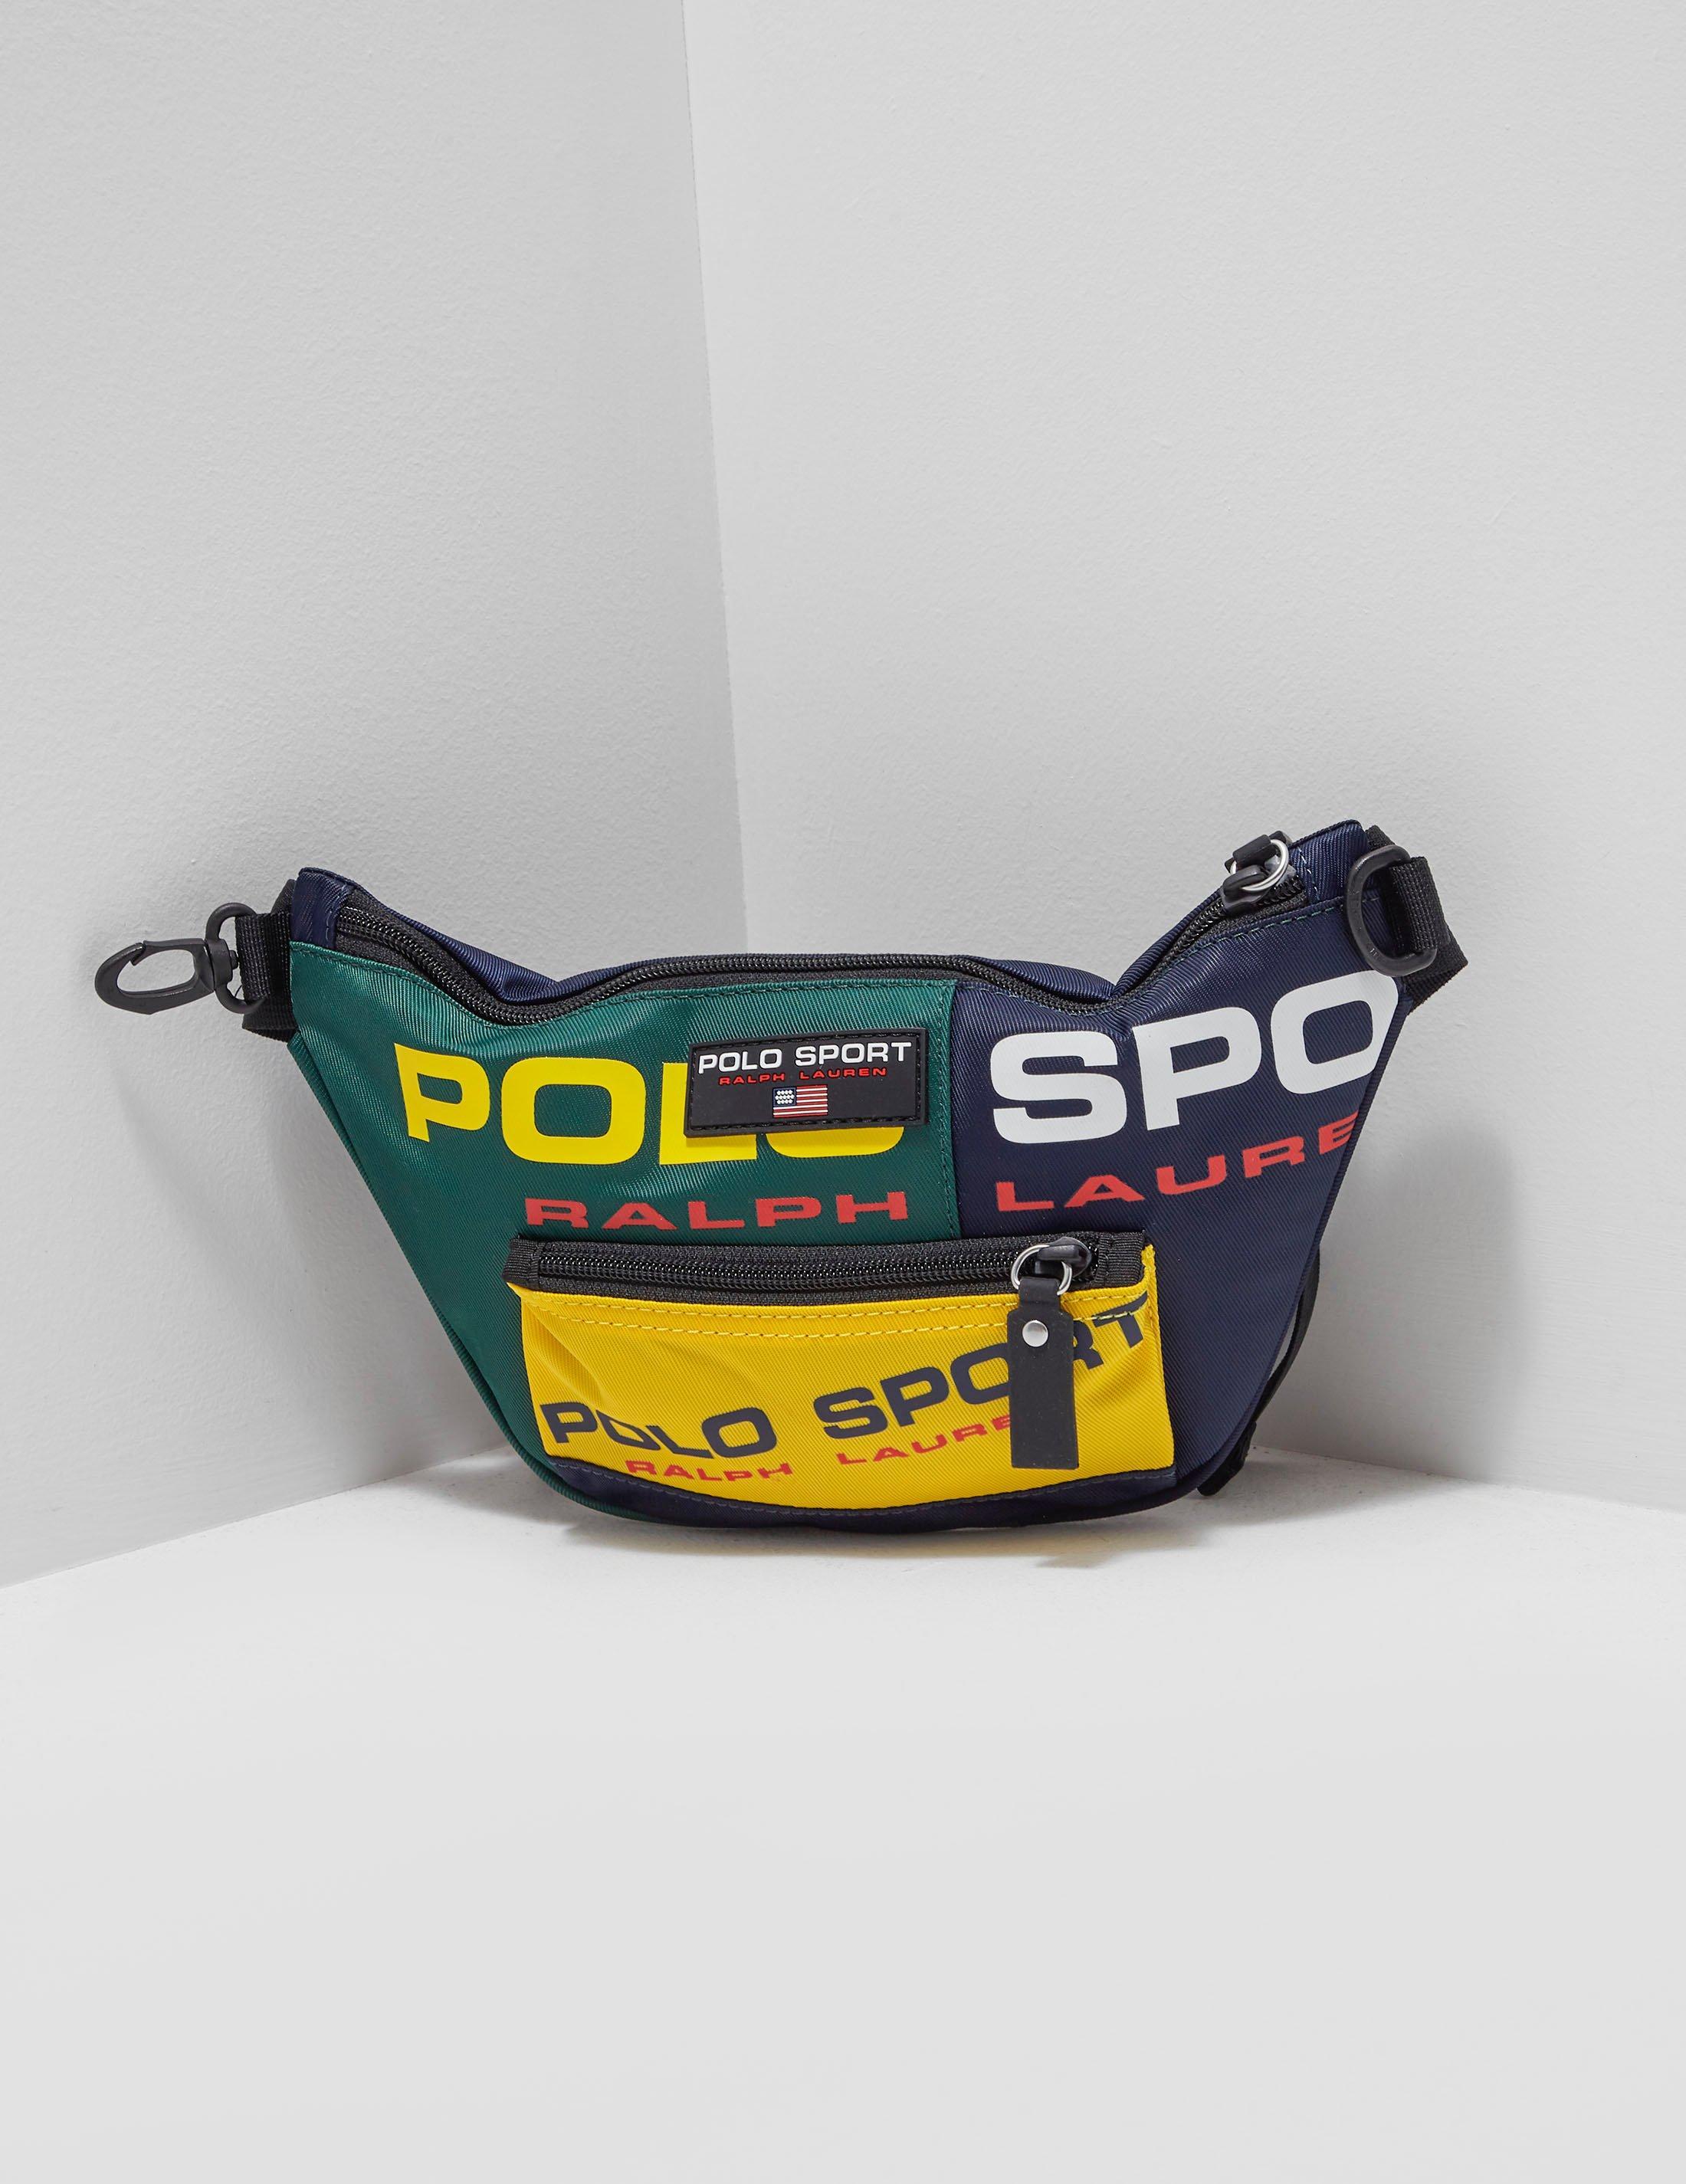 polo sport bum bag